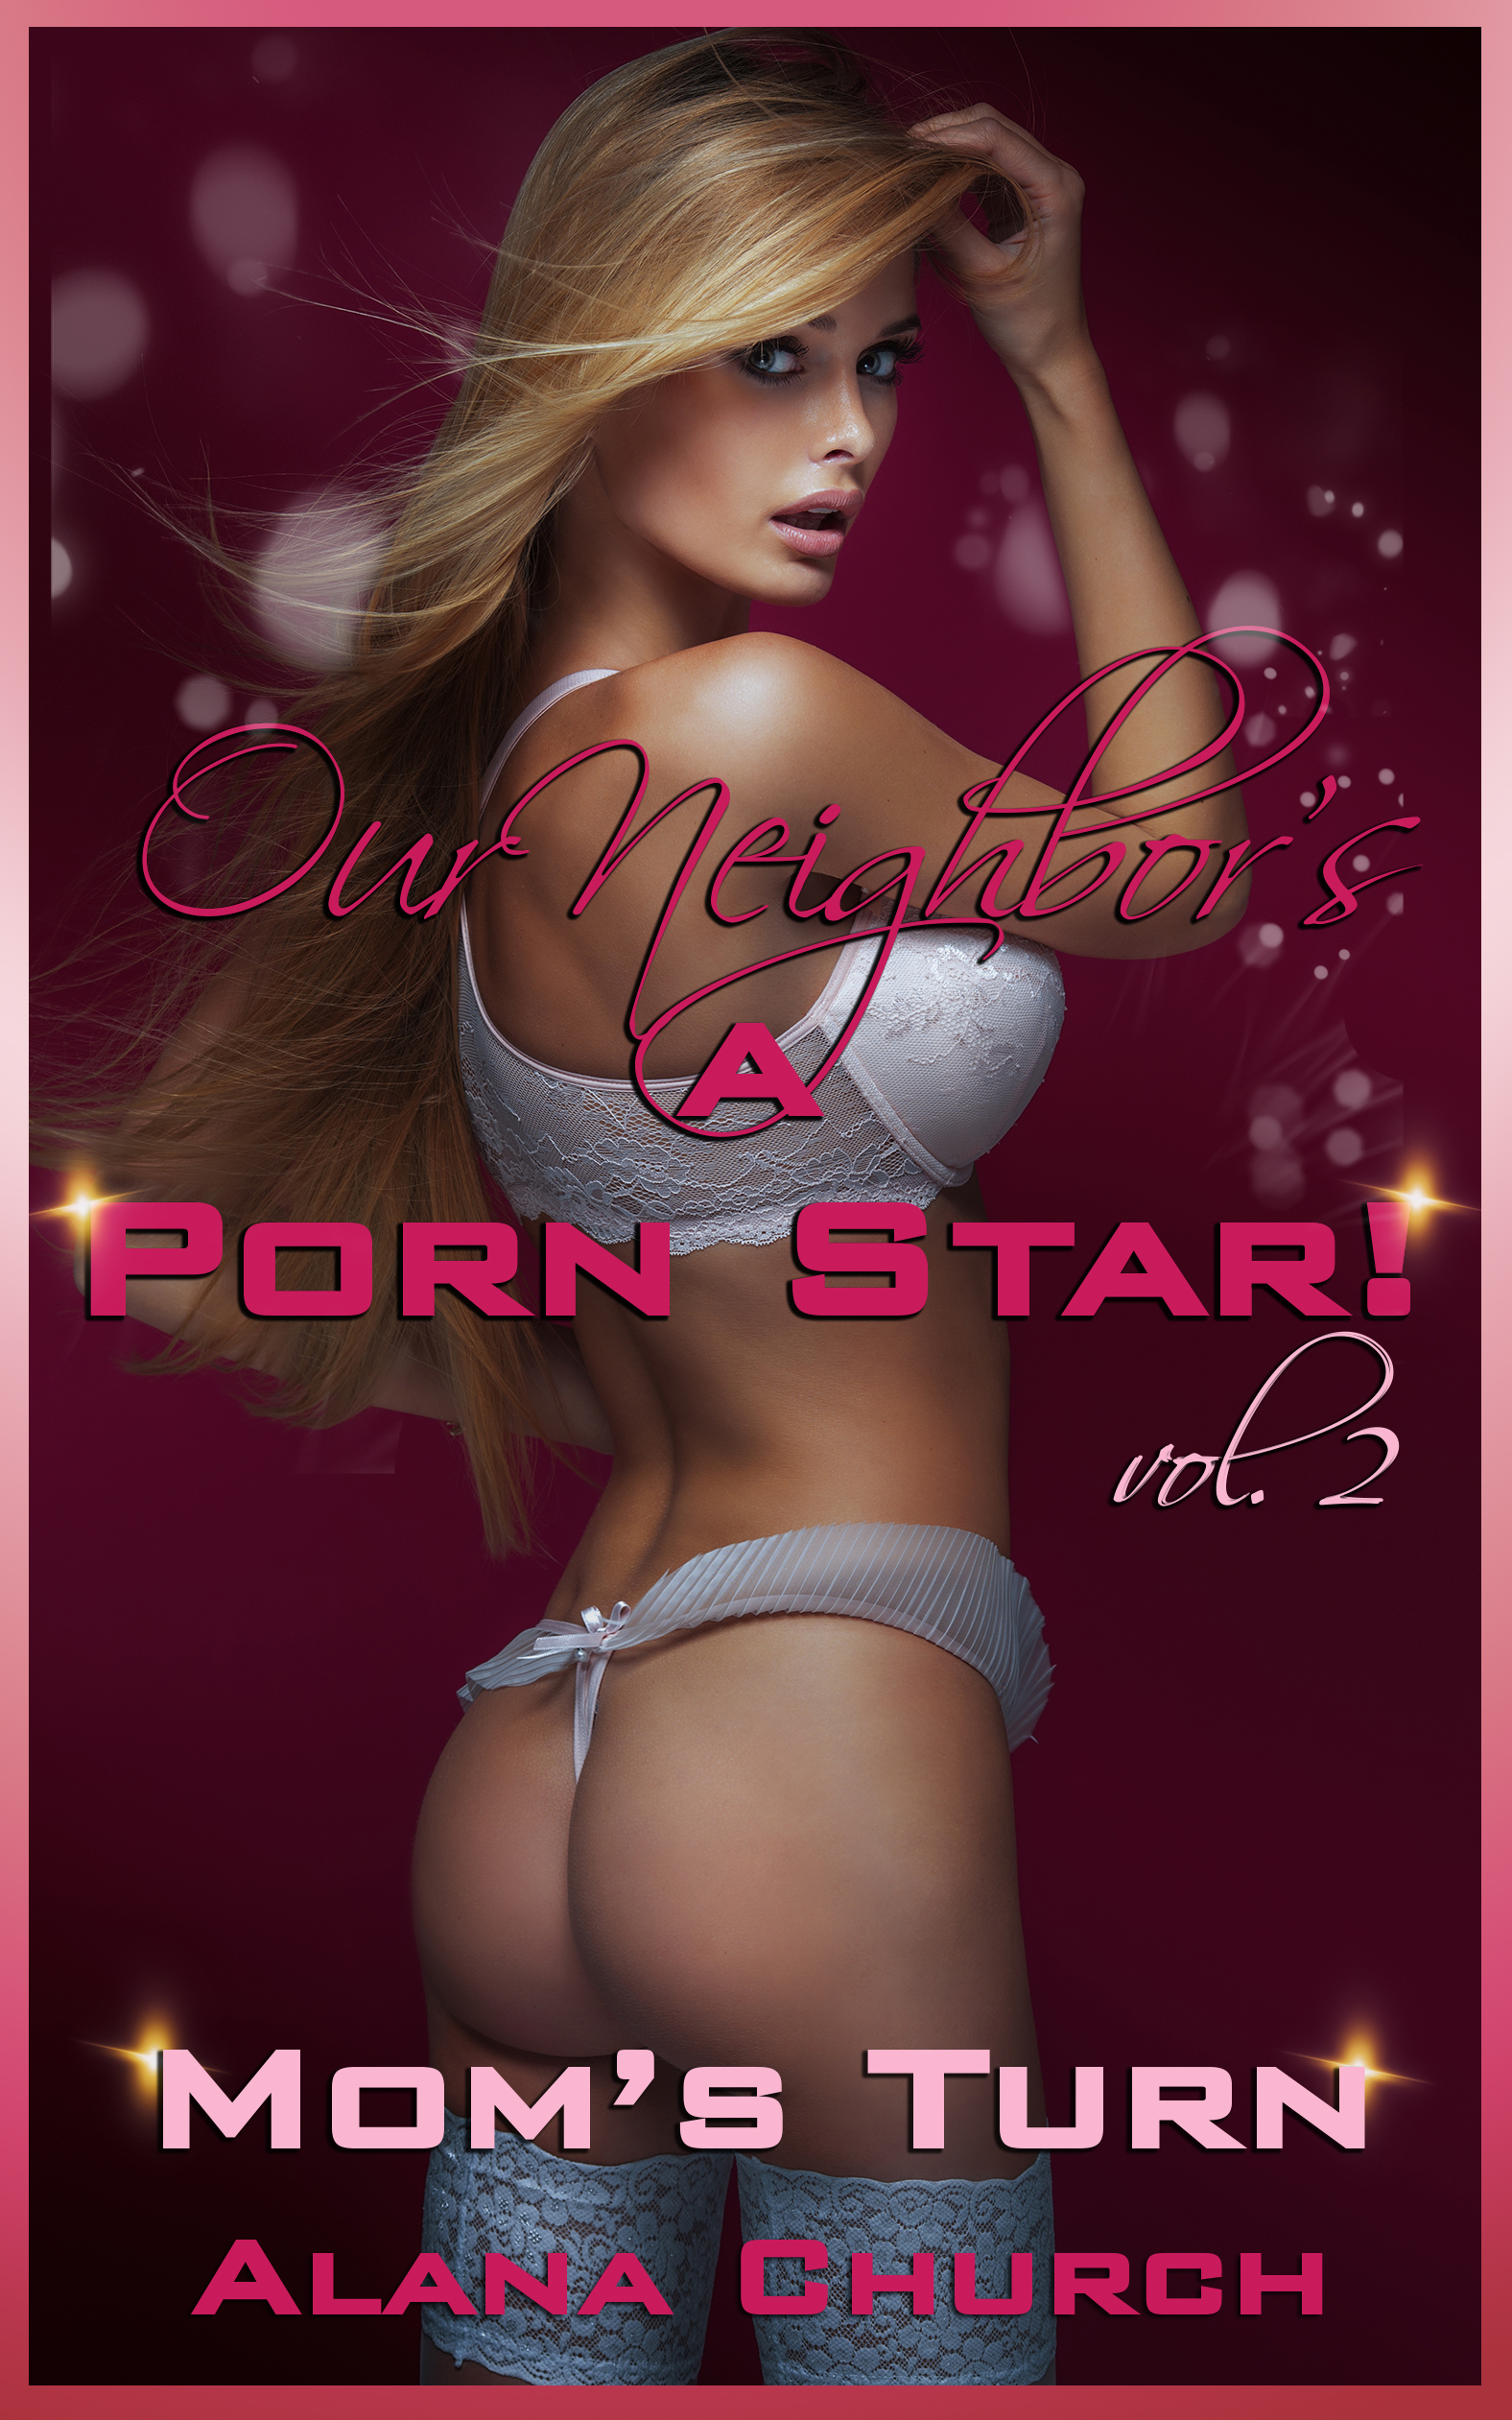 Top Mom Porn Stars - Our Neighbor's A Porn Star #2 - Mom's Turn, an Ebook by Alana Church